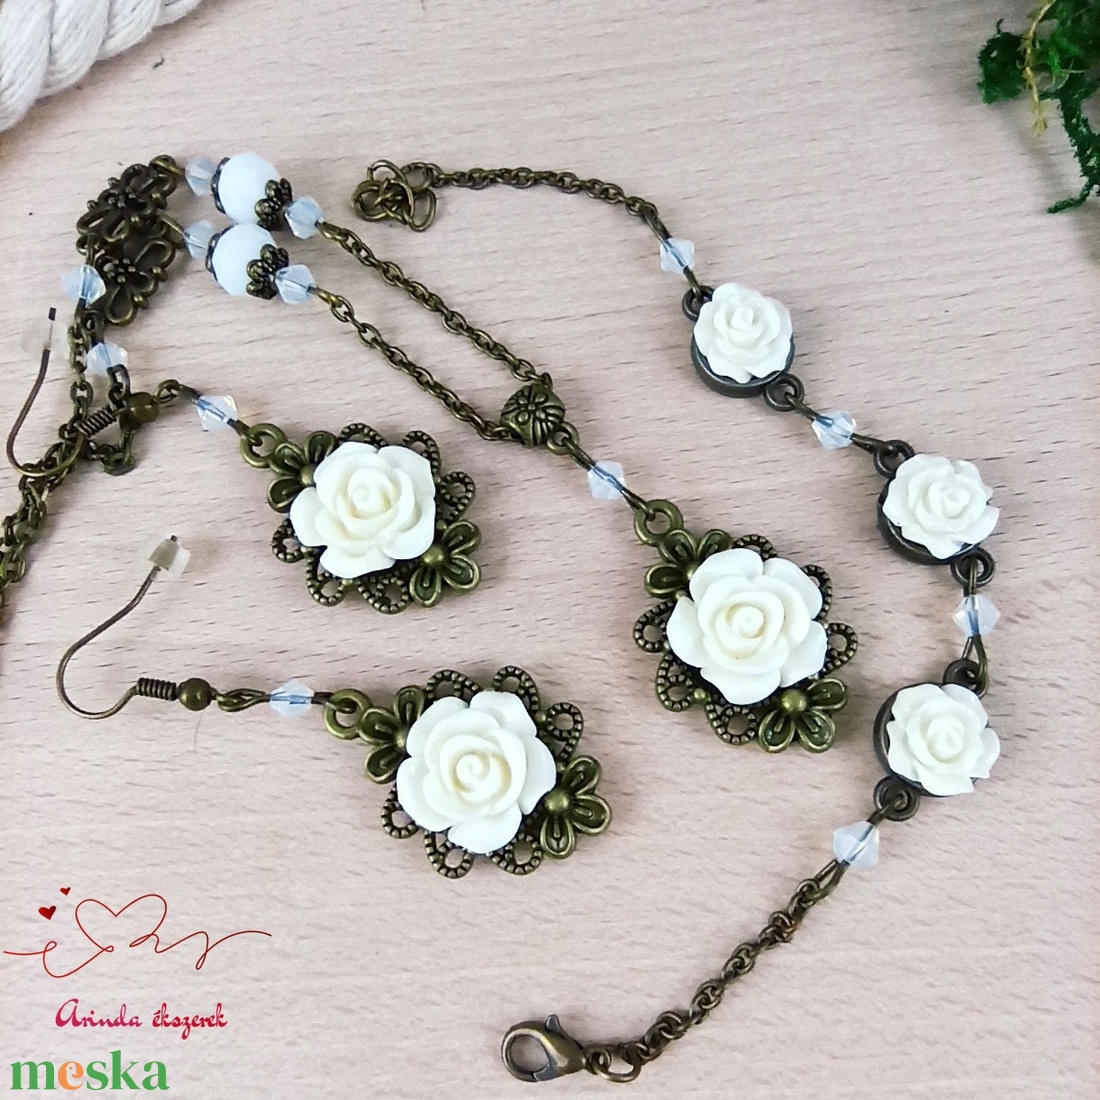 #24 fehér rózsás szett nyaklánc fülbevaló karkötő vintage esküvő alkalmi koszorúslány örömanya menyasszony násznagy - ékszer - ékszerszett - Meska.hu